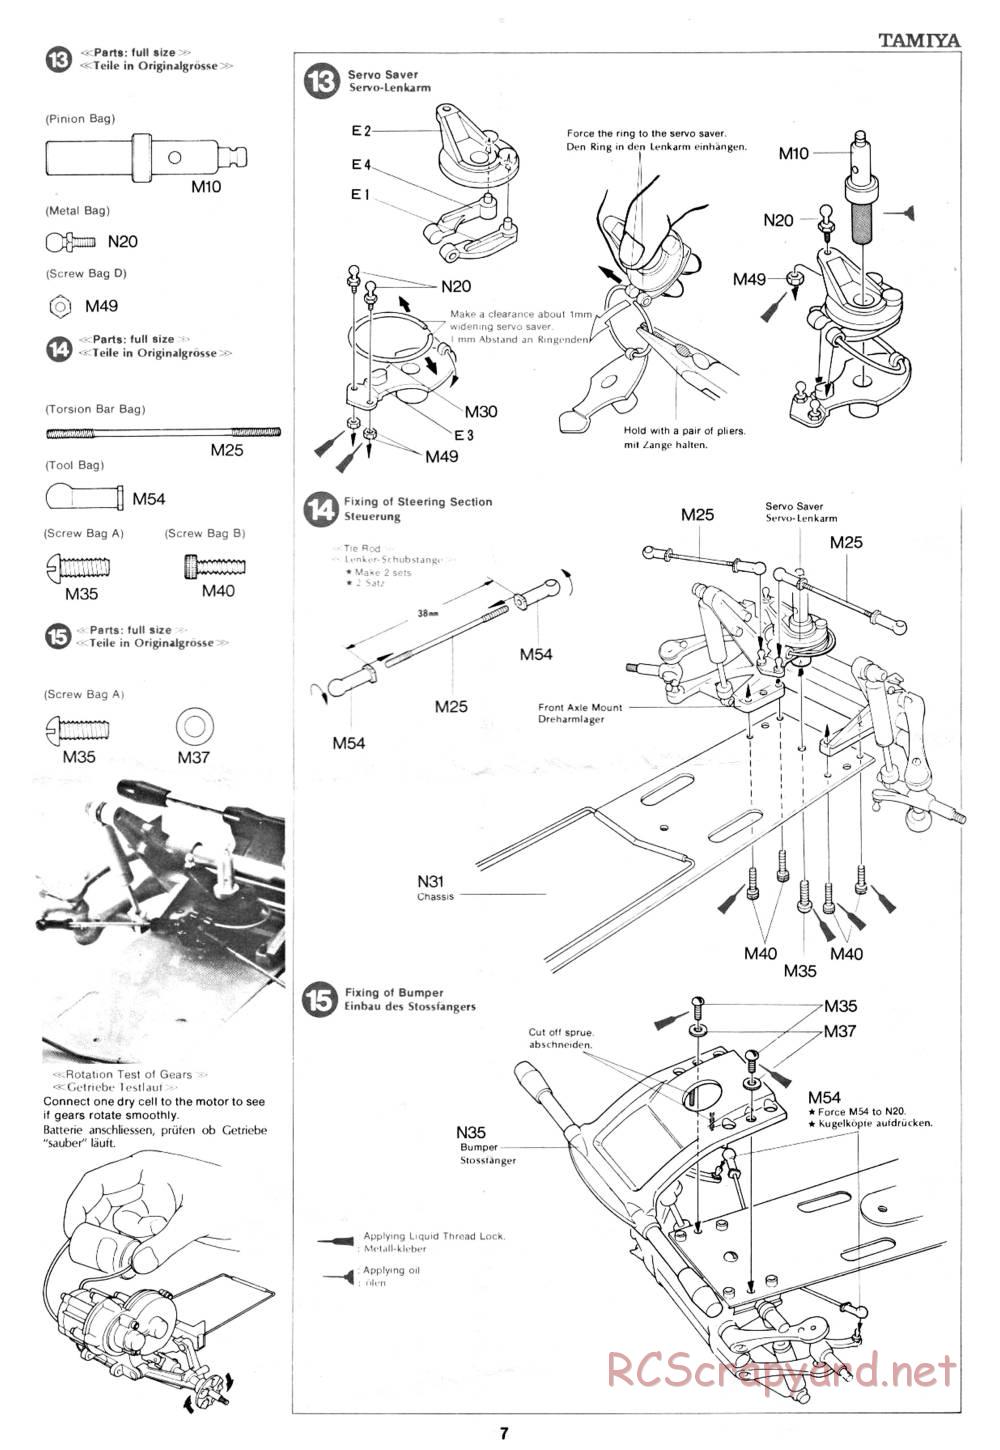 Tamiya - Rough Rider - 58015 - Manual - Page 7